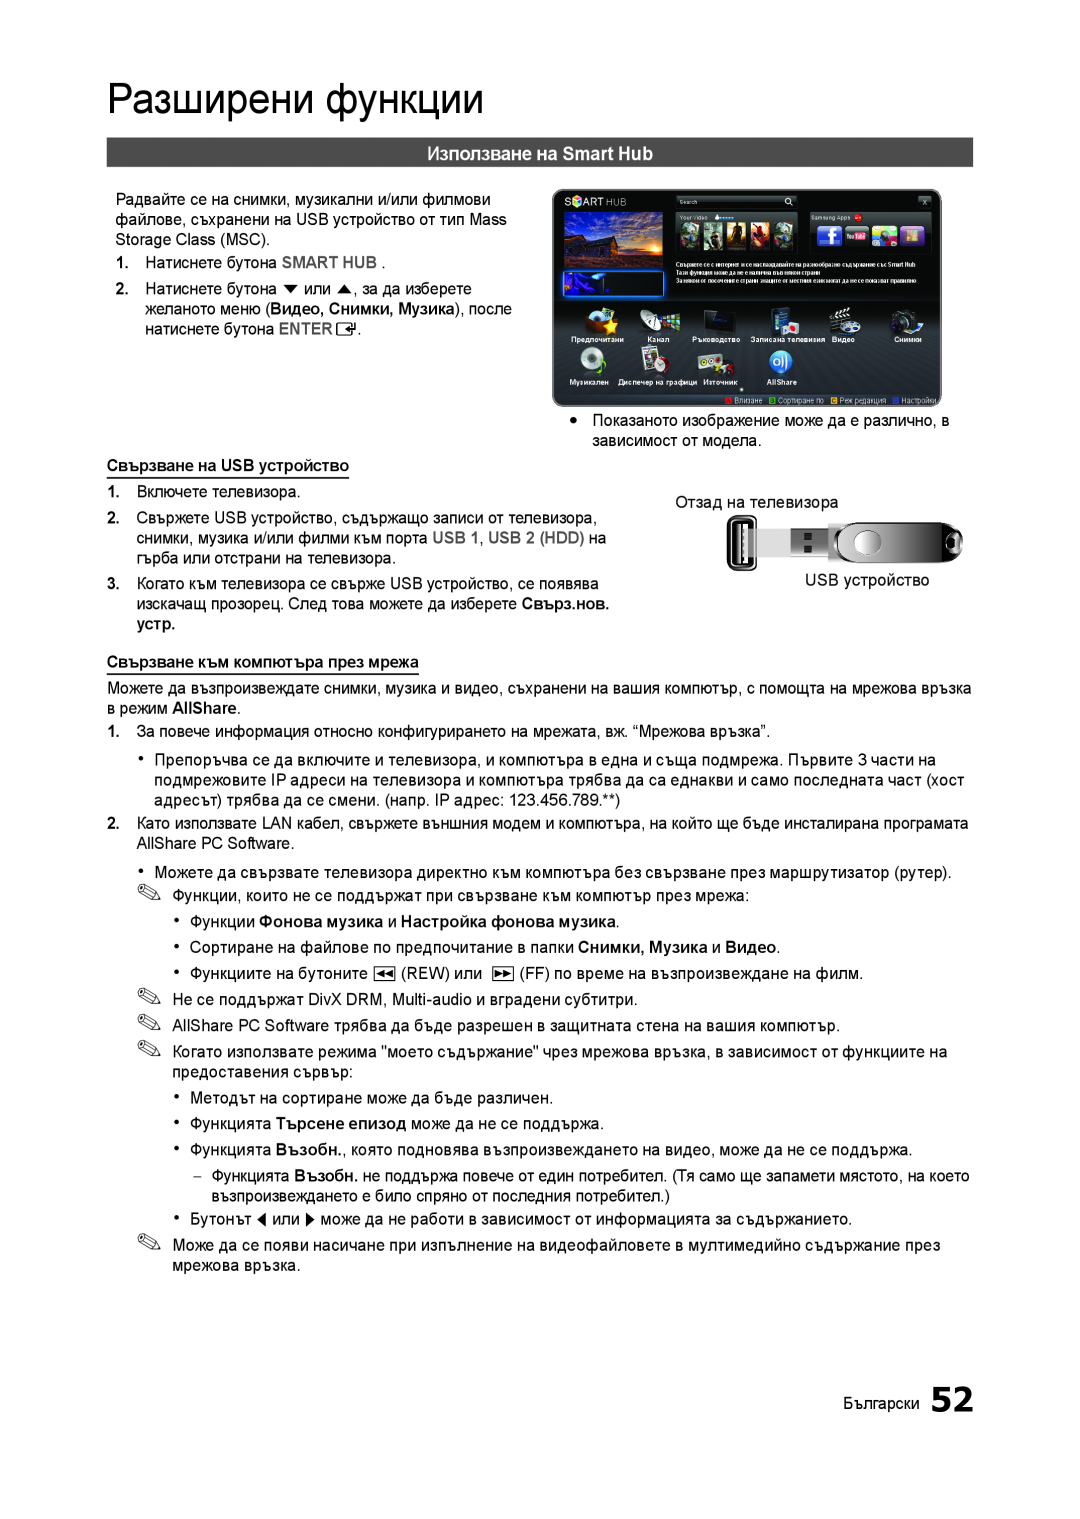 Samsung LT27A750EX/EN manual Използване на Smart Hub, Разширени функции, Свързване на USB устройство, в режим AllShare 